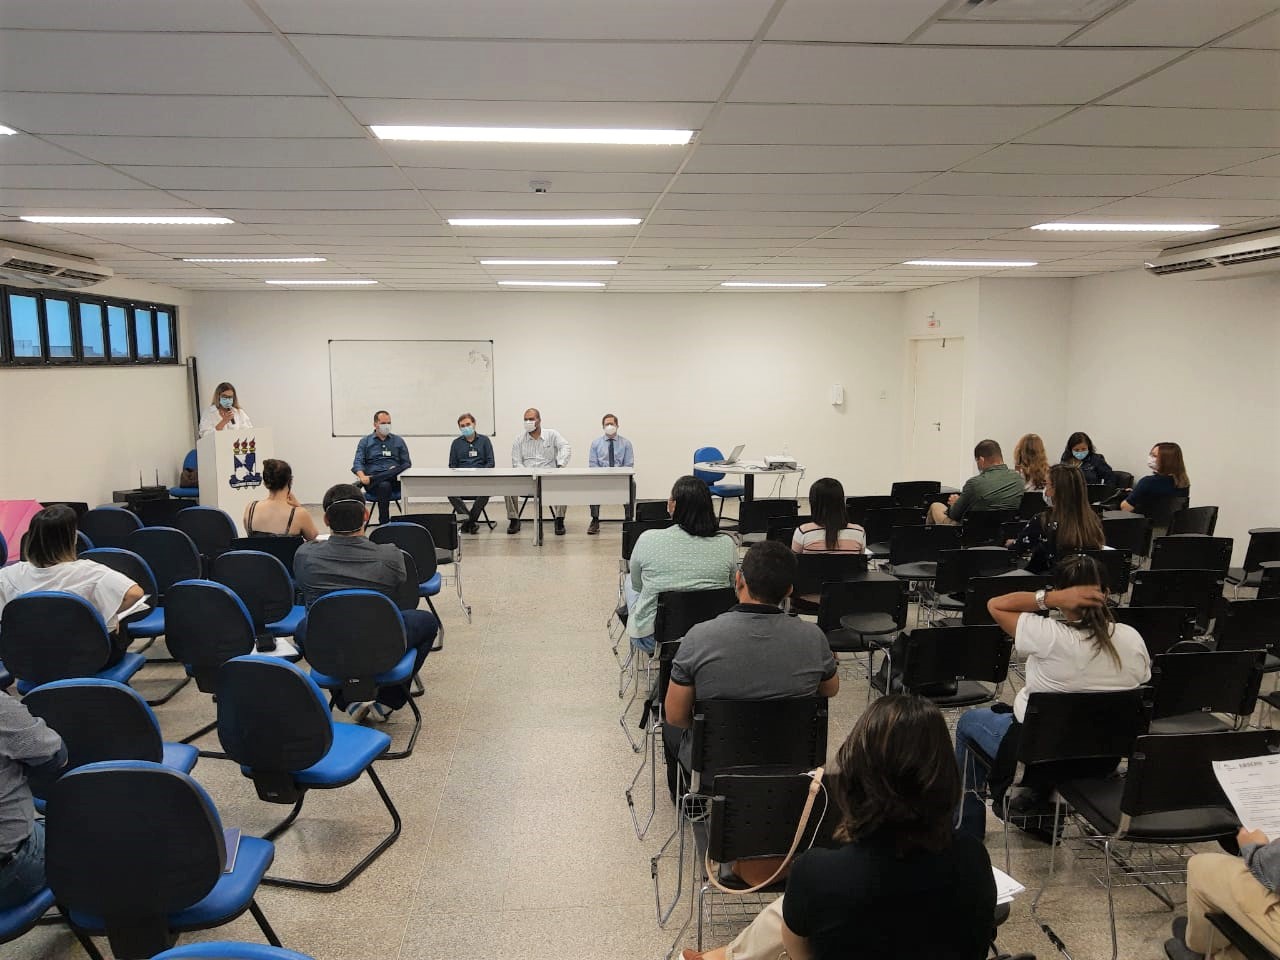 Acolhimento aconteceu no Centro de Simulações e Práticas do campus de Lagarto, com palestras e apresentações. (fotos: HUL-UFS)